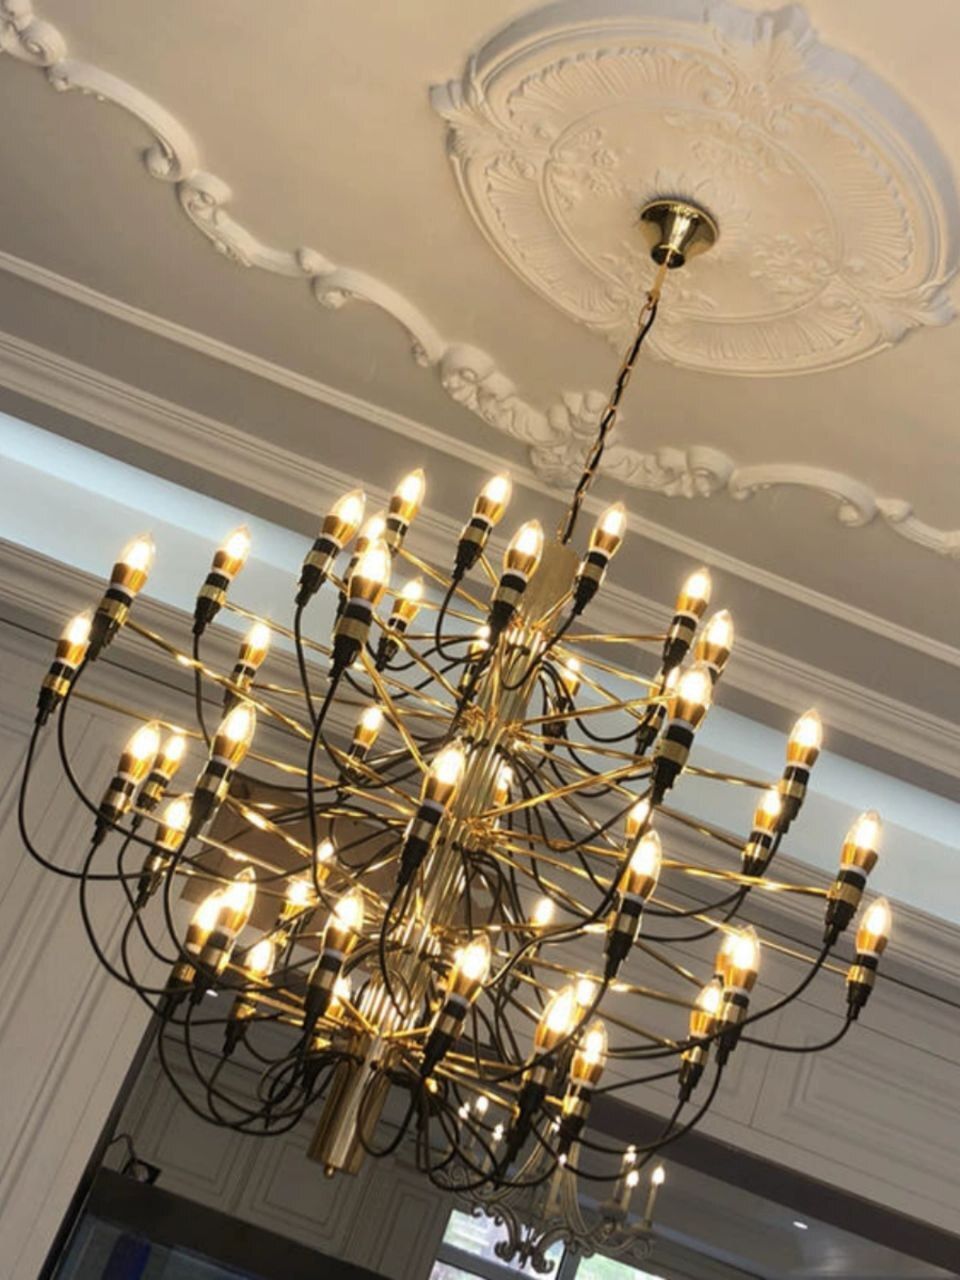 GORSCH chandelier by Romatti